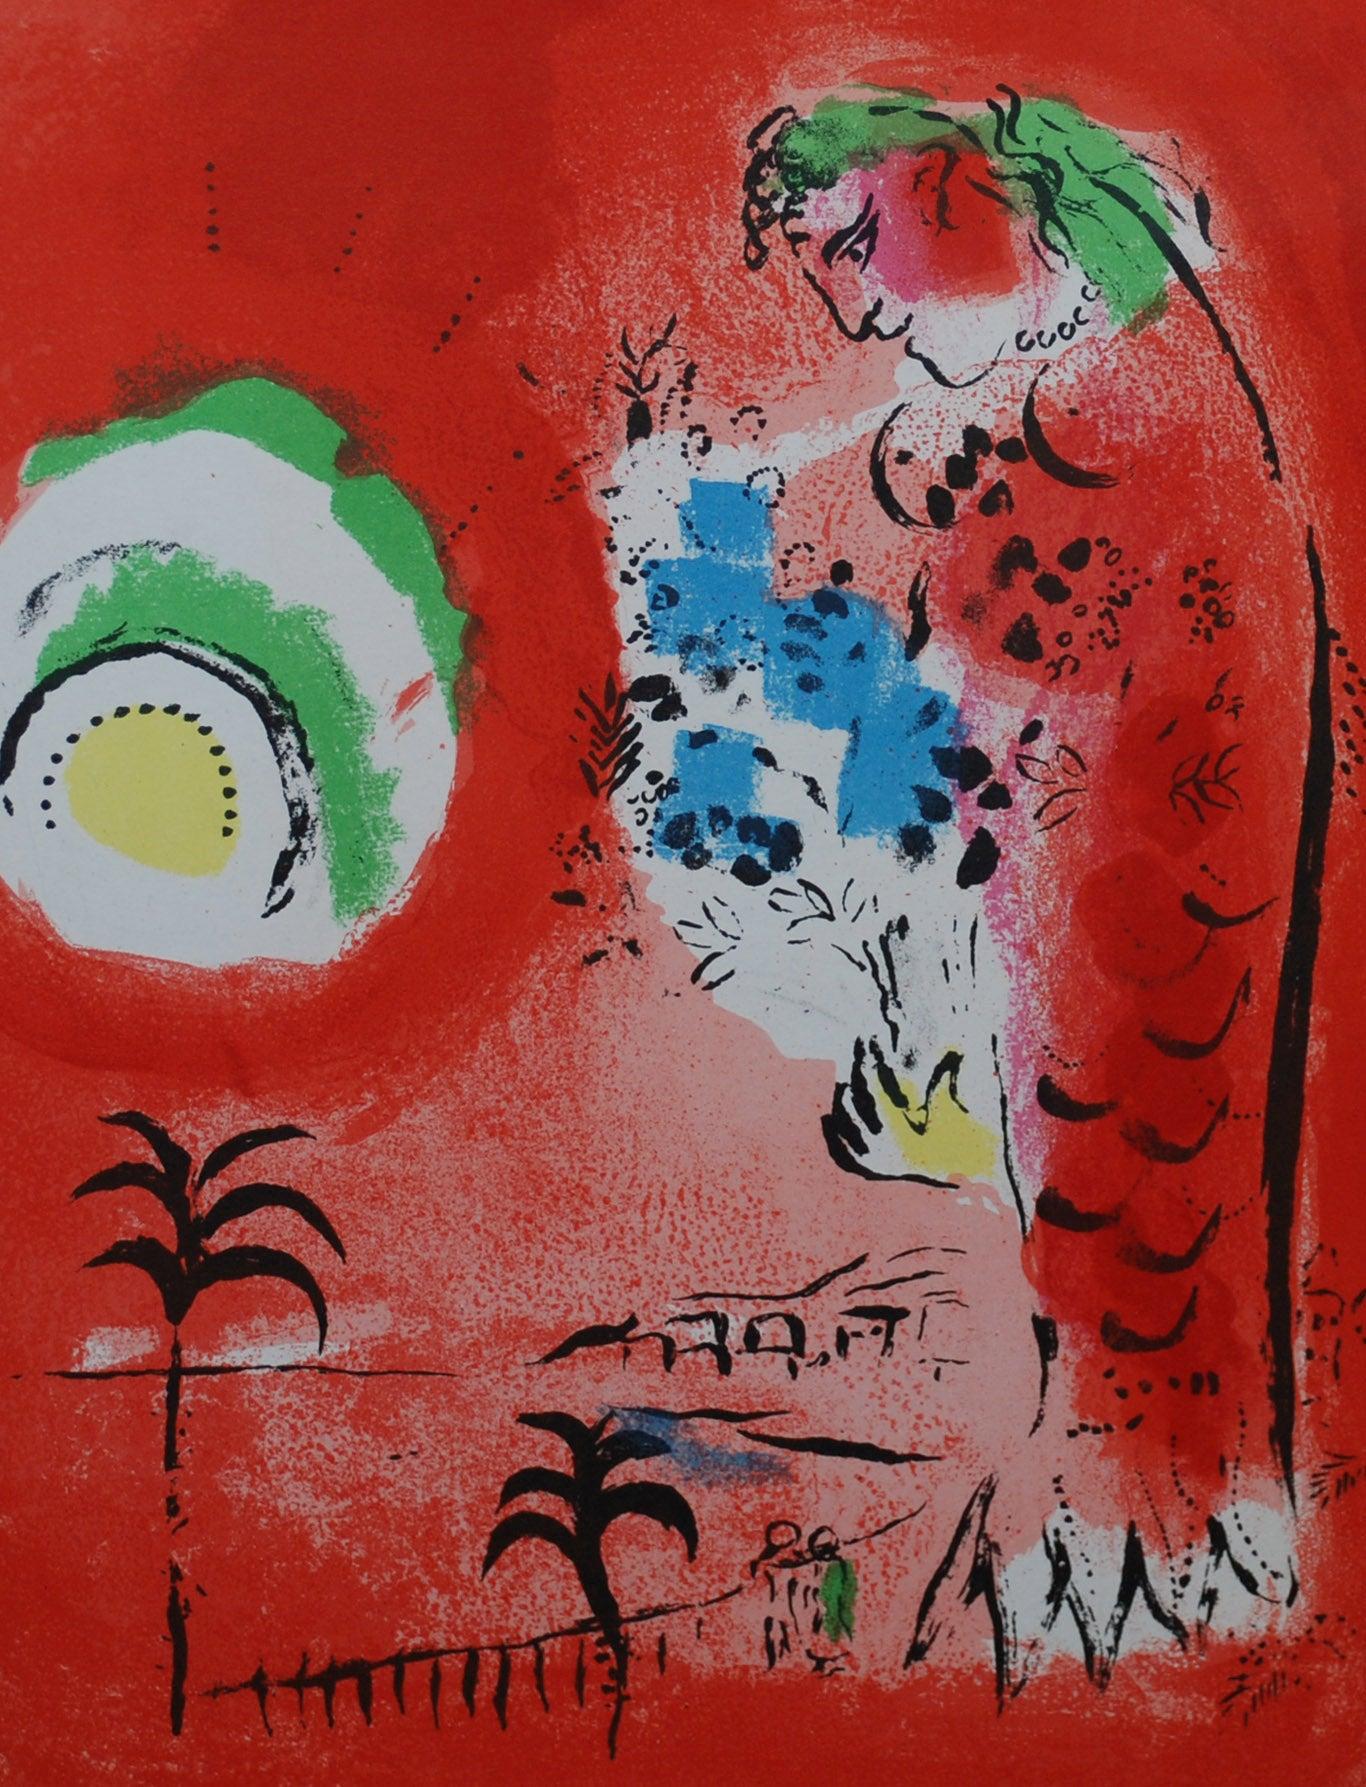 Marc Chagall La baie des anges
Artiste : Marc Chagall
Médium : Lithographie
Titre : La baie des anges
Portfolio : 1960 Mourlot Lithographe I
Année : 1960
Édition : Non numéroté
Encadré Taille : 22 3/4" x 18 3/4"
Taille de l'image : 9 1/2" x 12